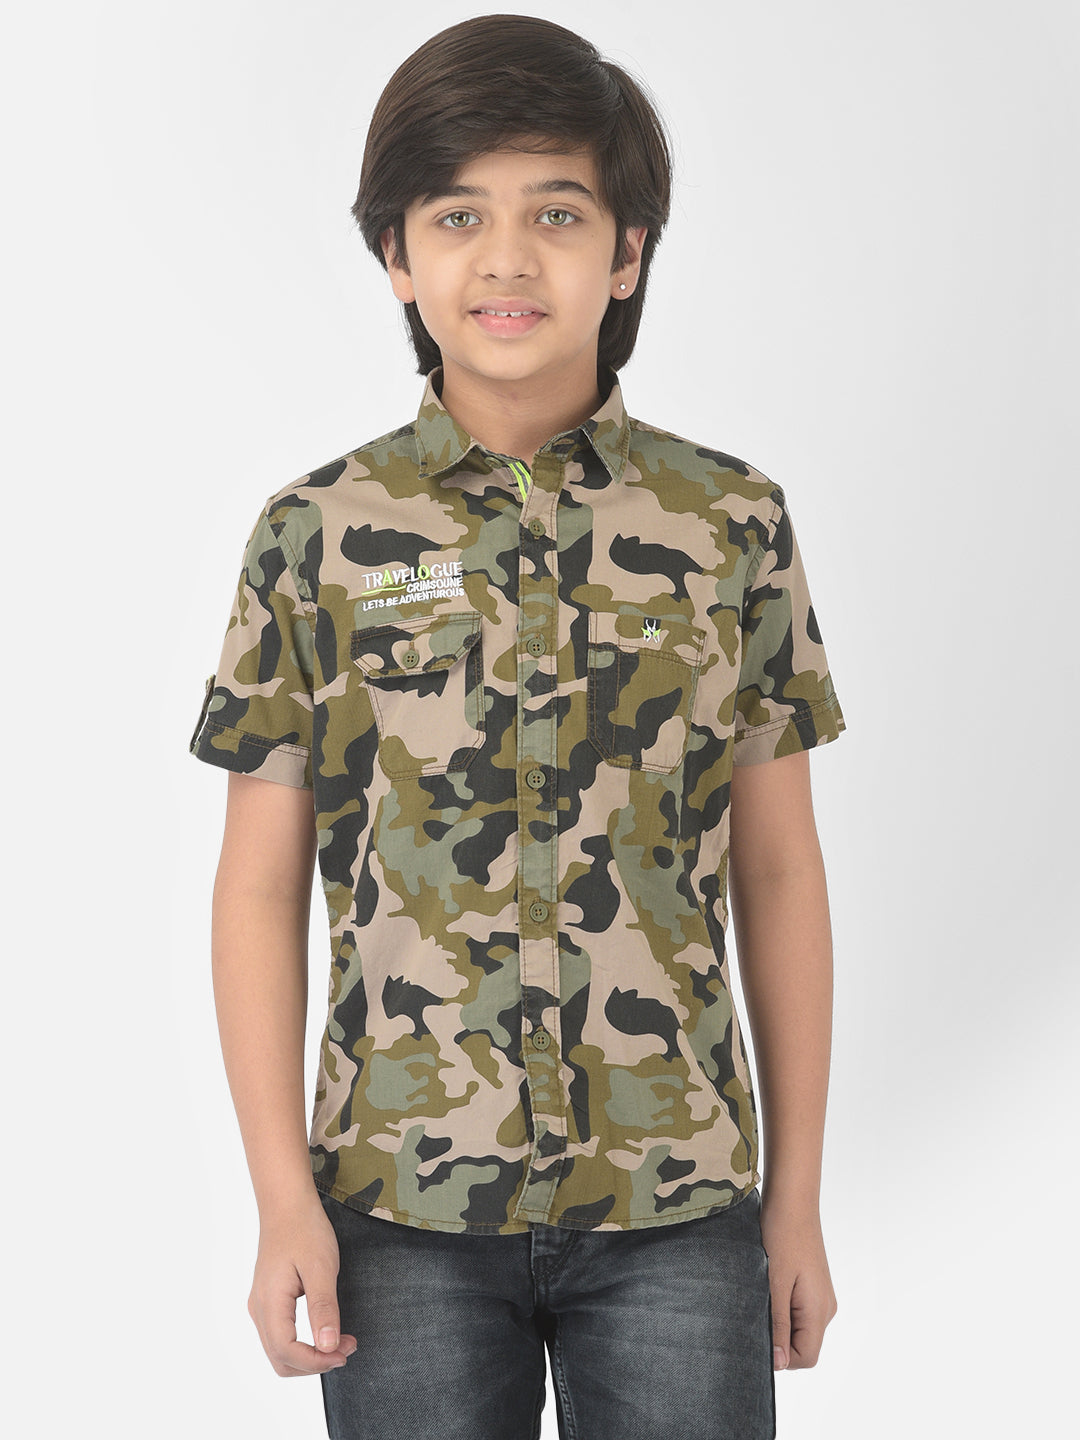 Olive Camouflage Shirt - Boys Shirts